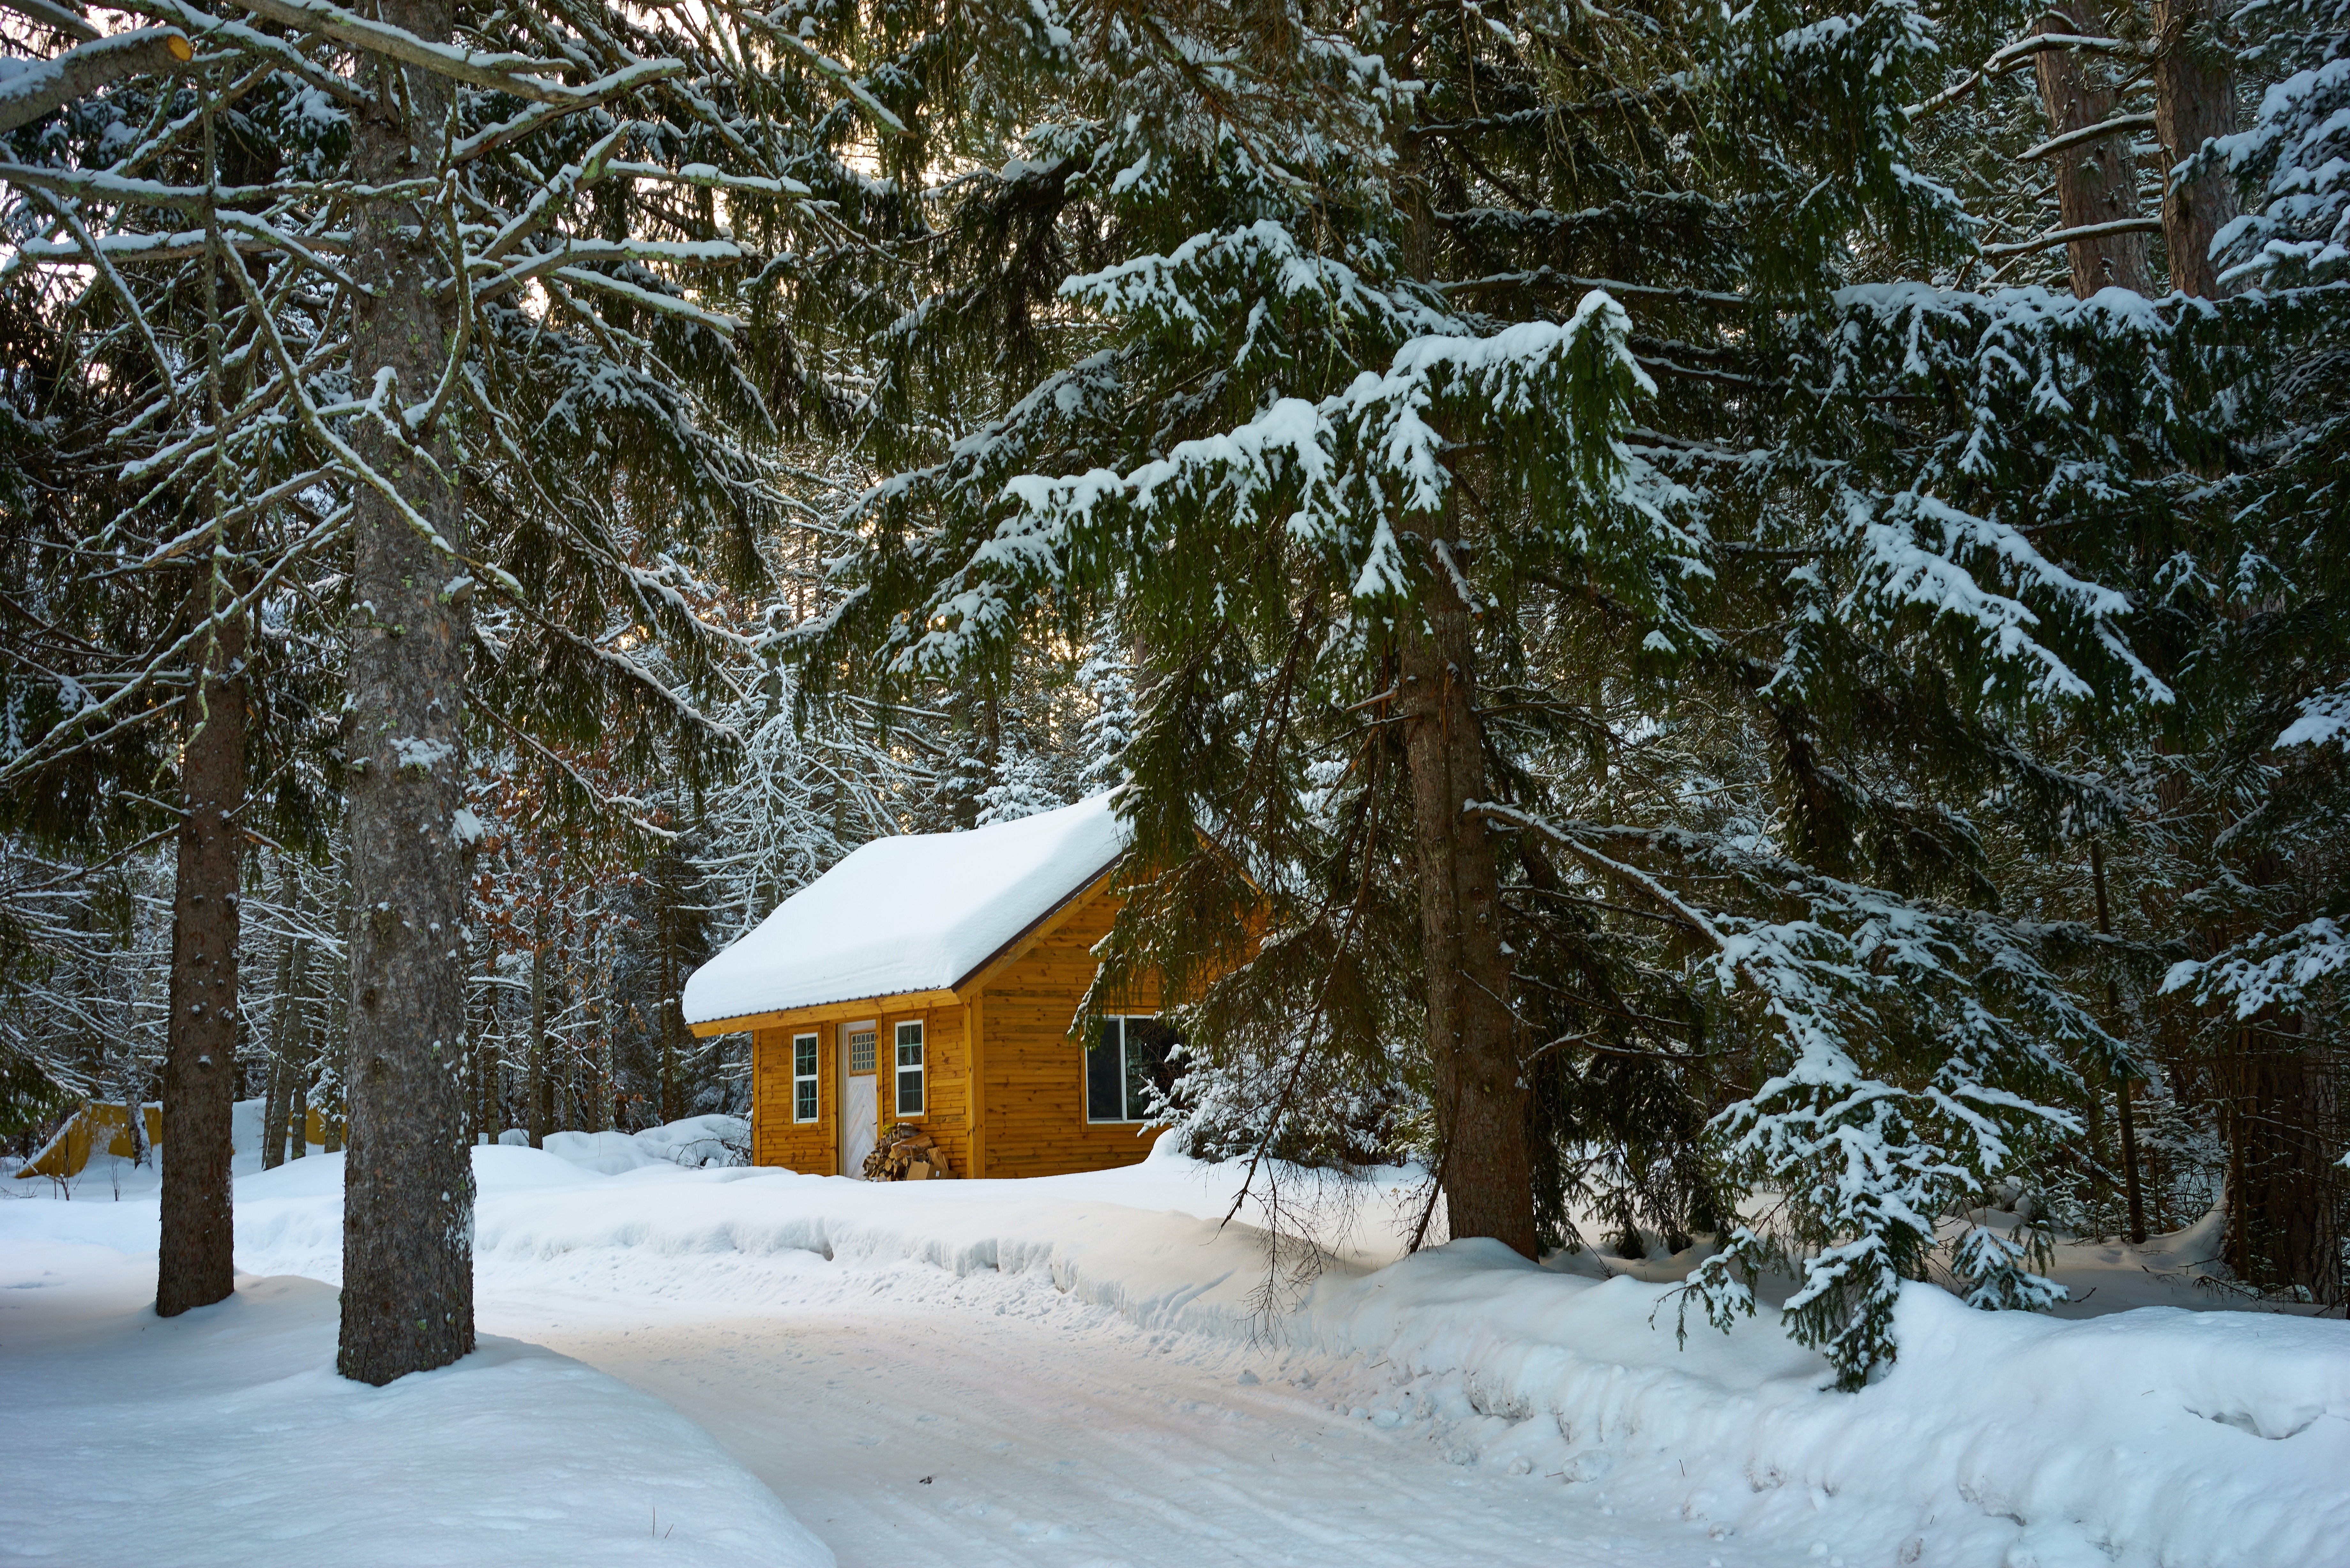 Cabaña en medio de la nieve. | Foto: Pexels